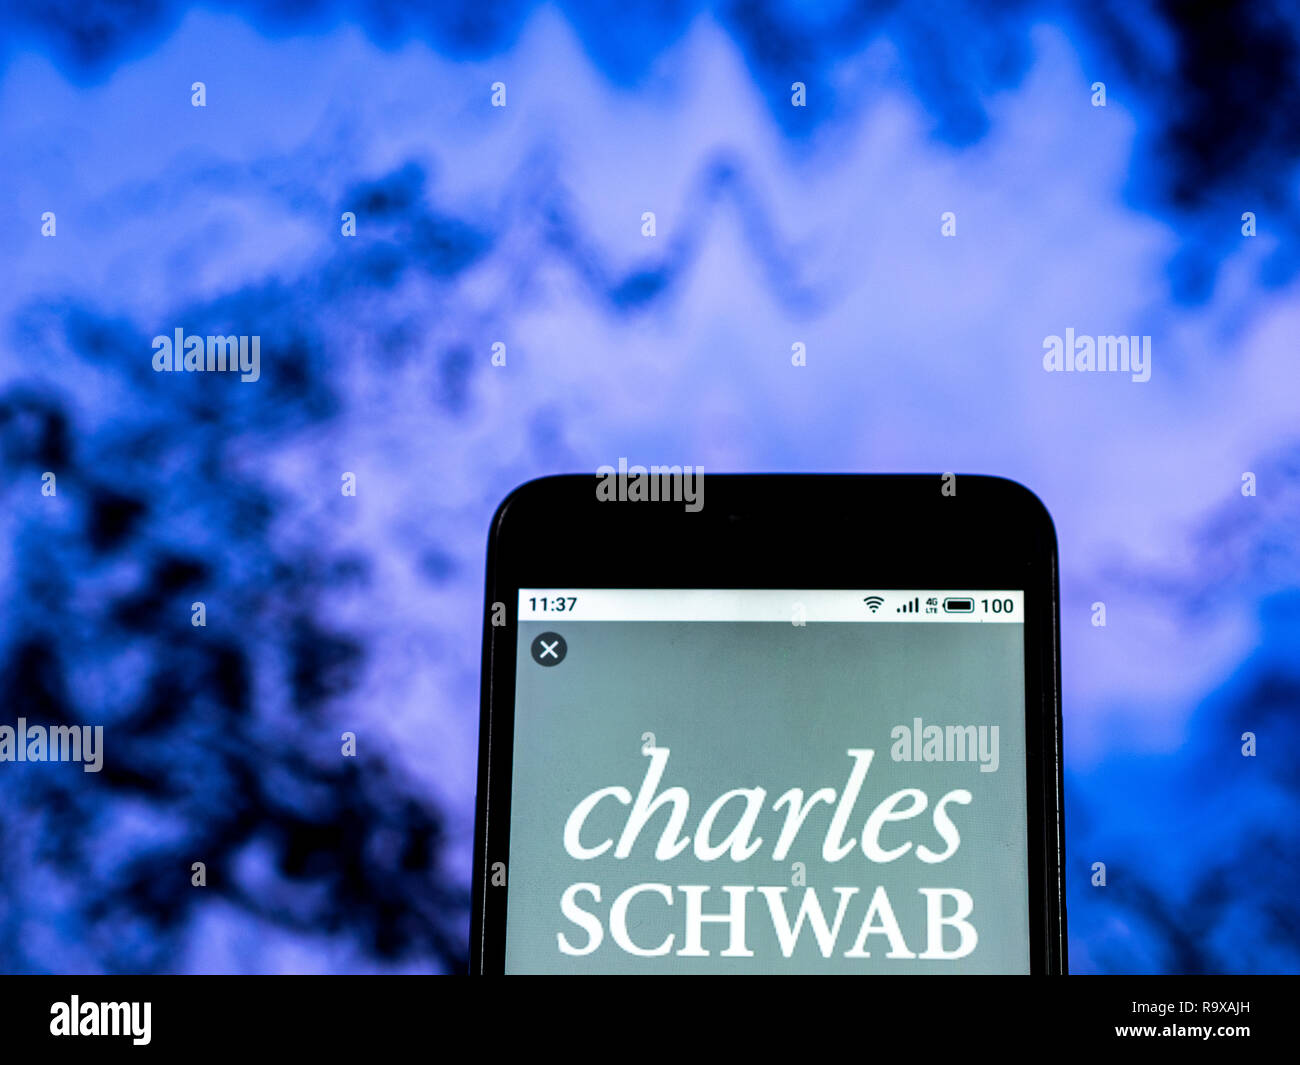 Charles Schwab Corporation Financial services company logo vu affichée sur smart phone Banque D'Images